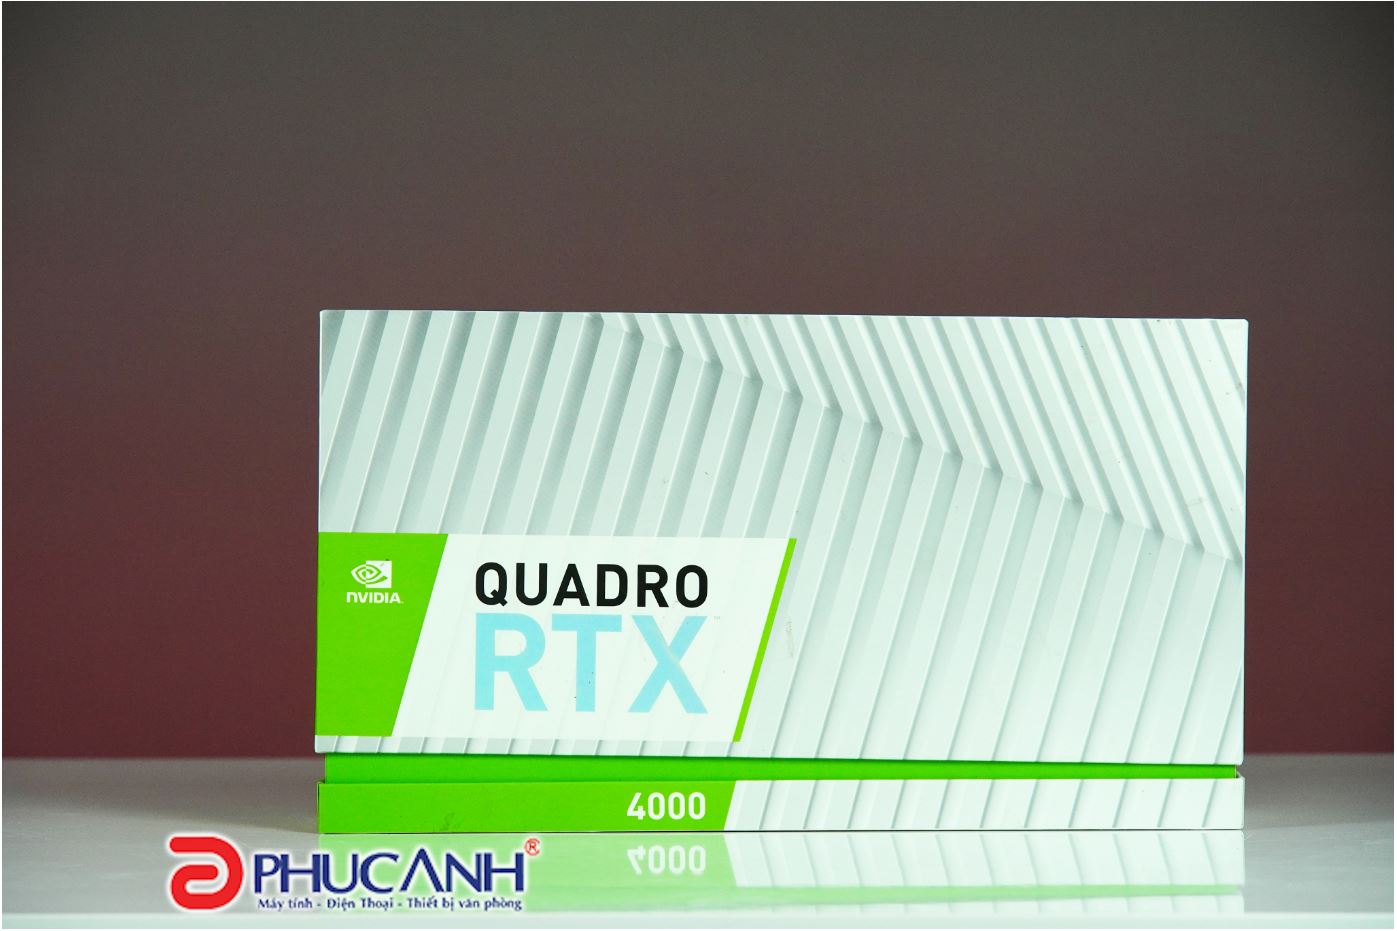 Giới thiệu Quadro RTX 4000